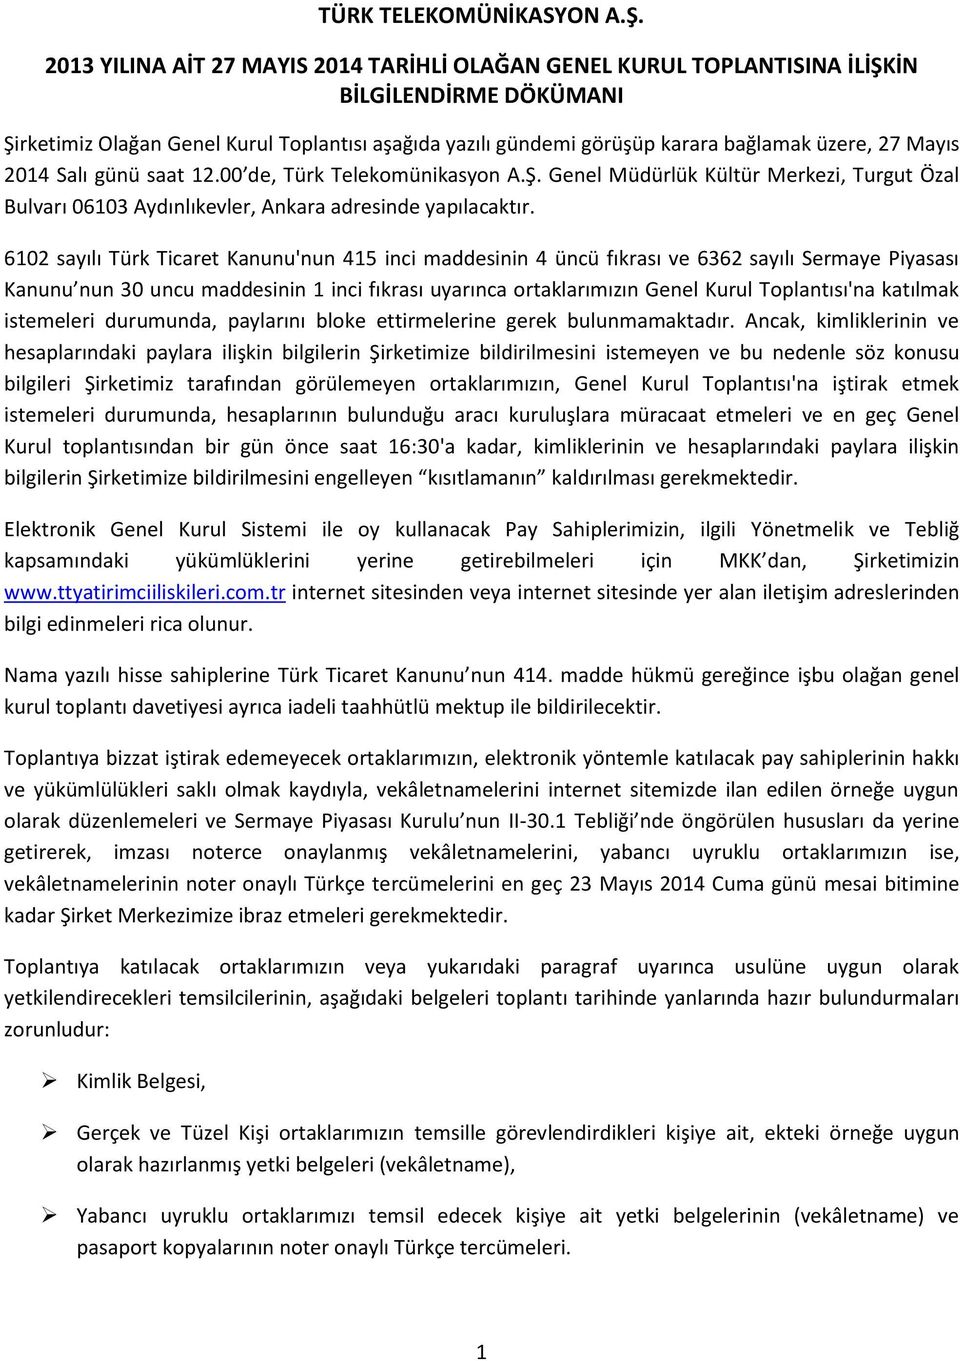 Mayıs 2014 Salı günü saat 12.00 de, Türk Telekomünikasyon A.Ş. Genel Müdürlük Kültür Merkezi, Turgut Özal Bulvarı 06103 Aydınlıkevler, Ankara adresinde yapılacaktır.